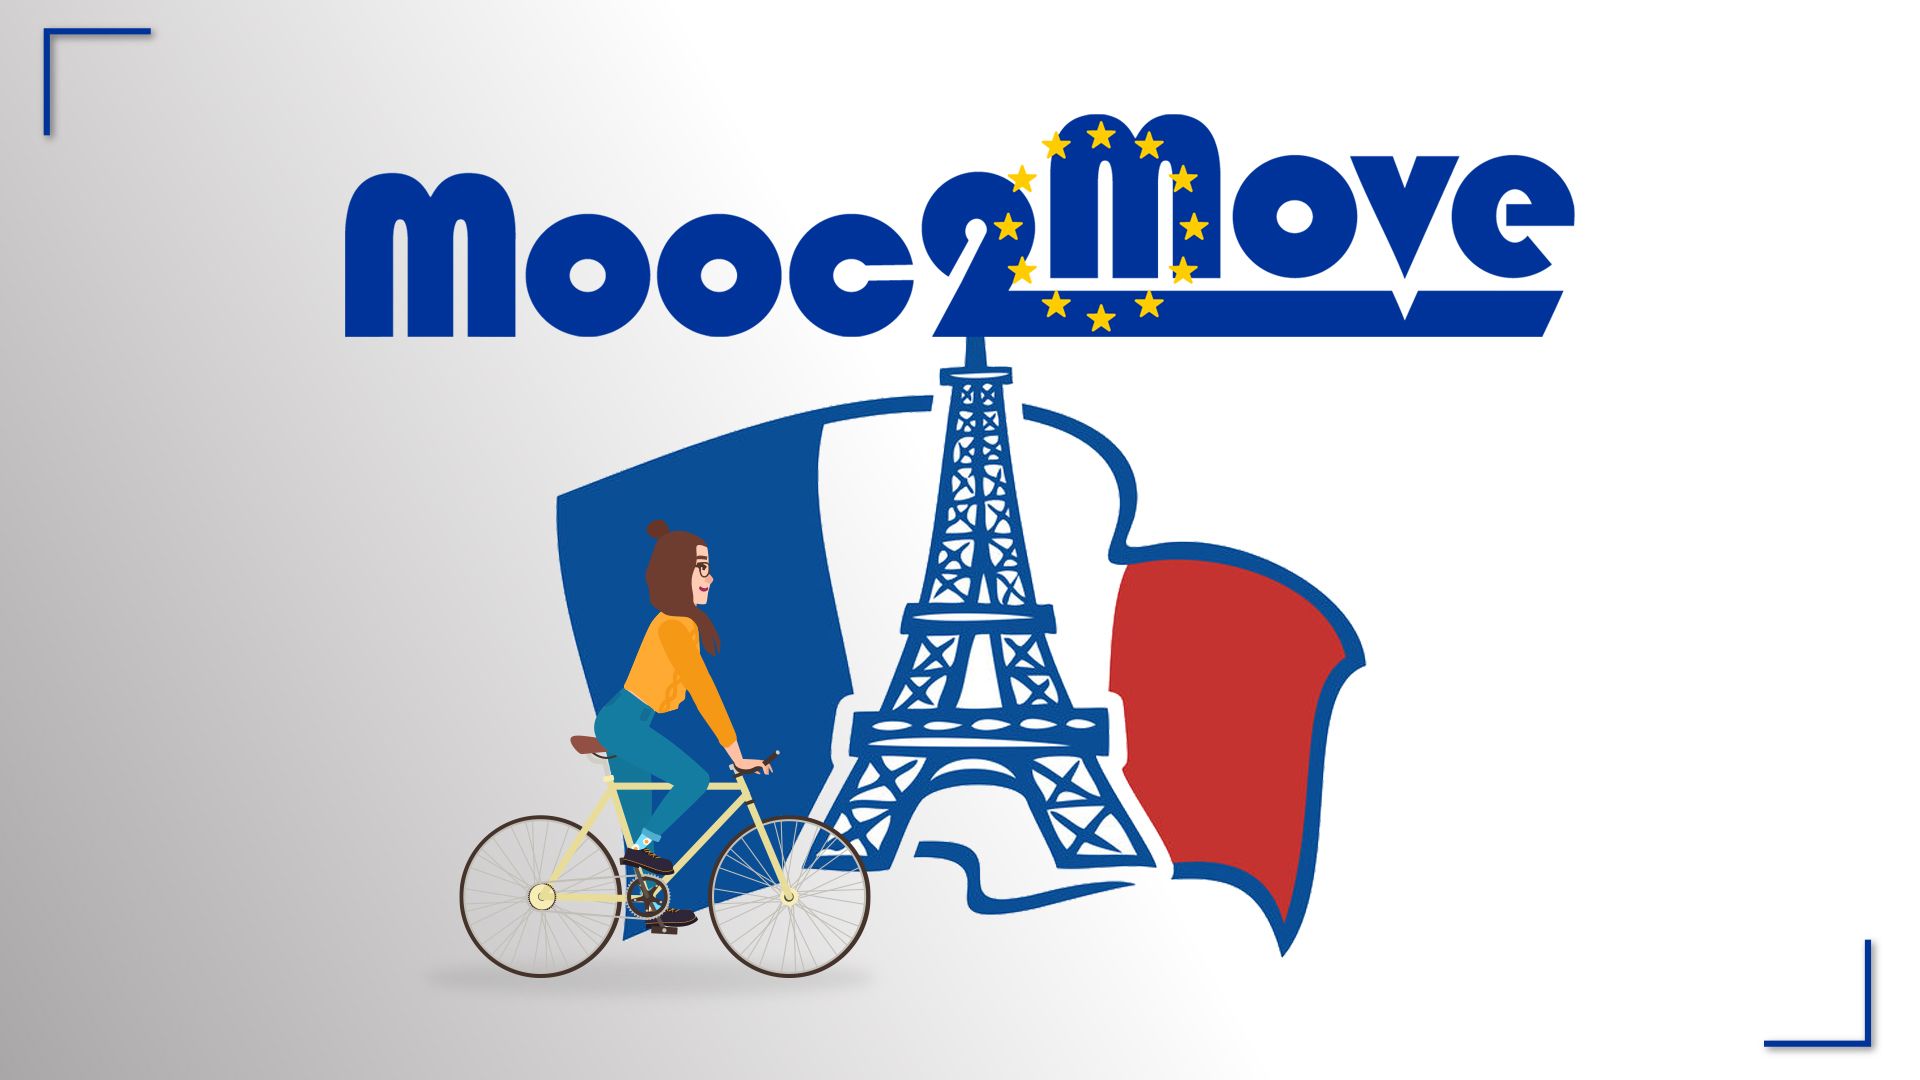 Mooc2Move : le français pour l'université / French for university